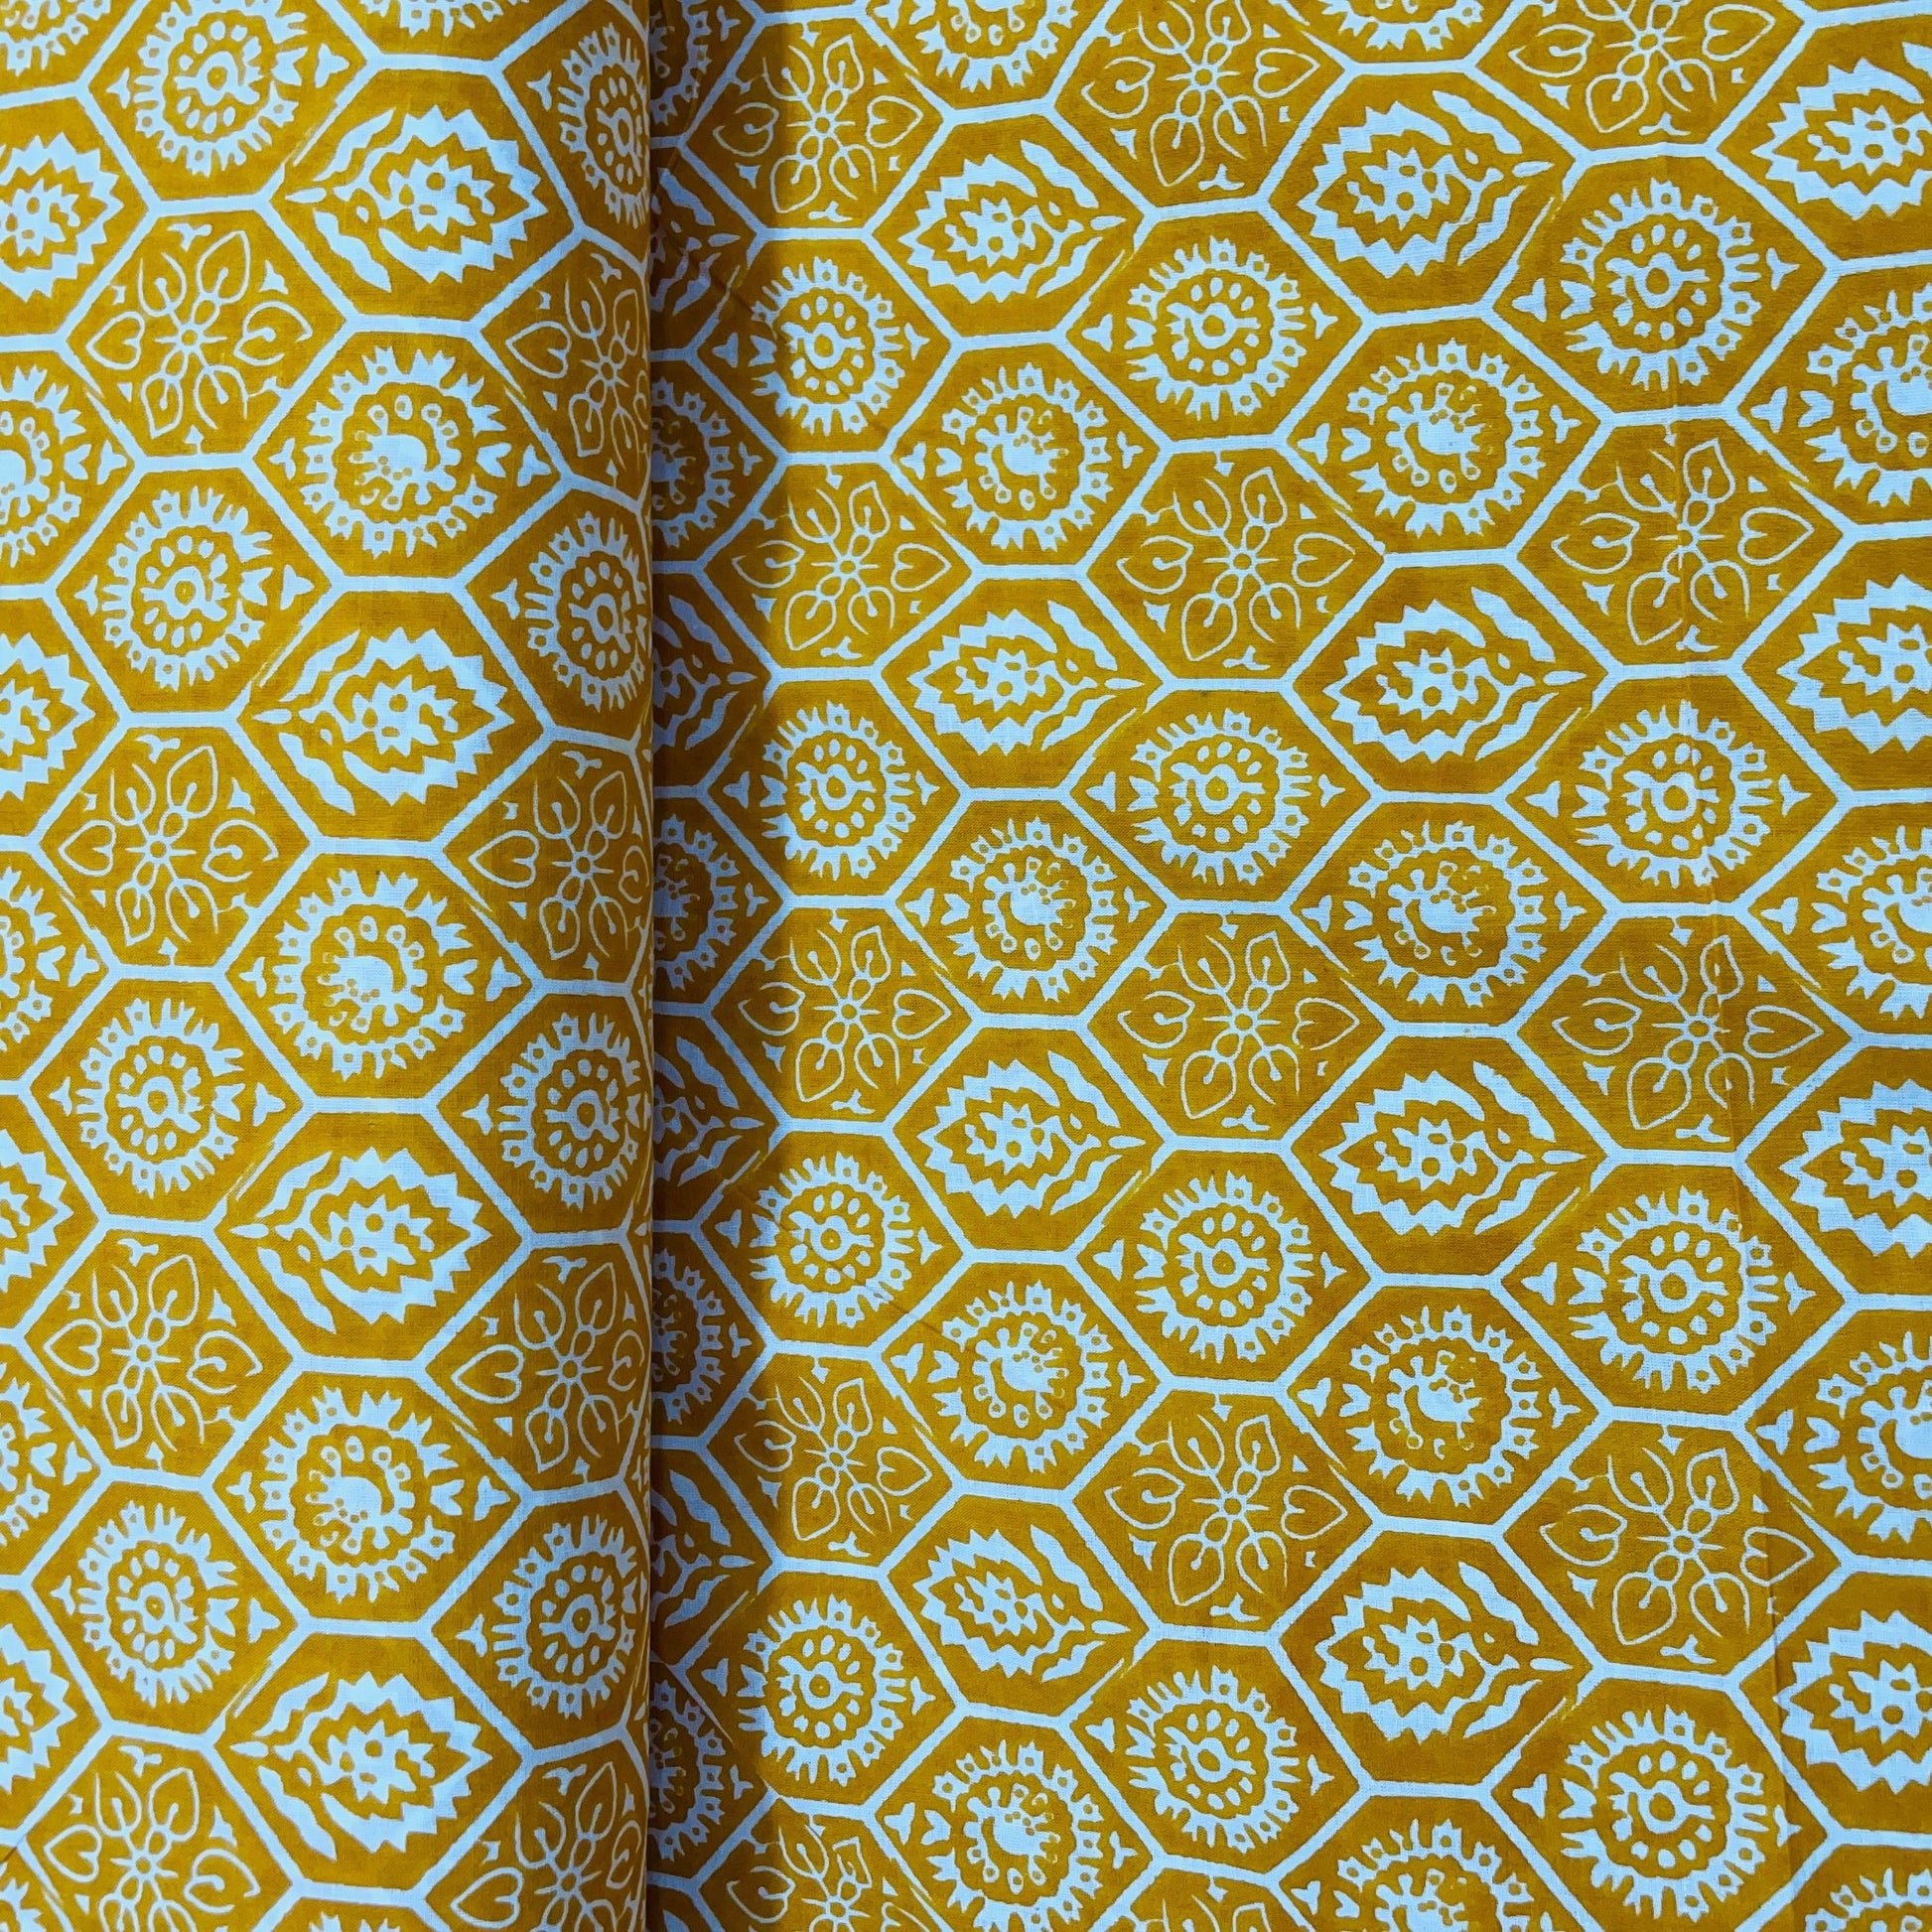 Yellow & White Floral Print Cotton Fabric - TradeUNO